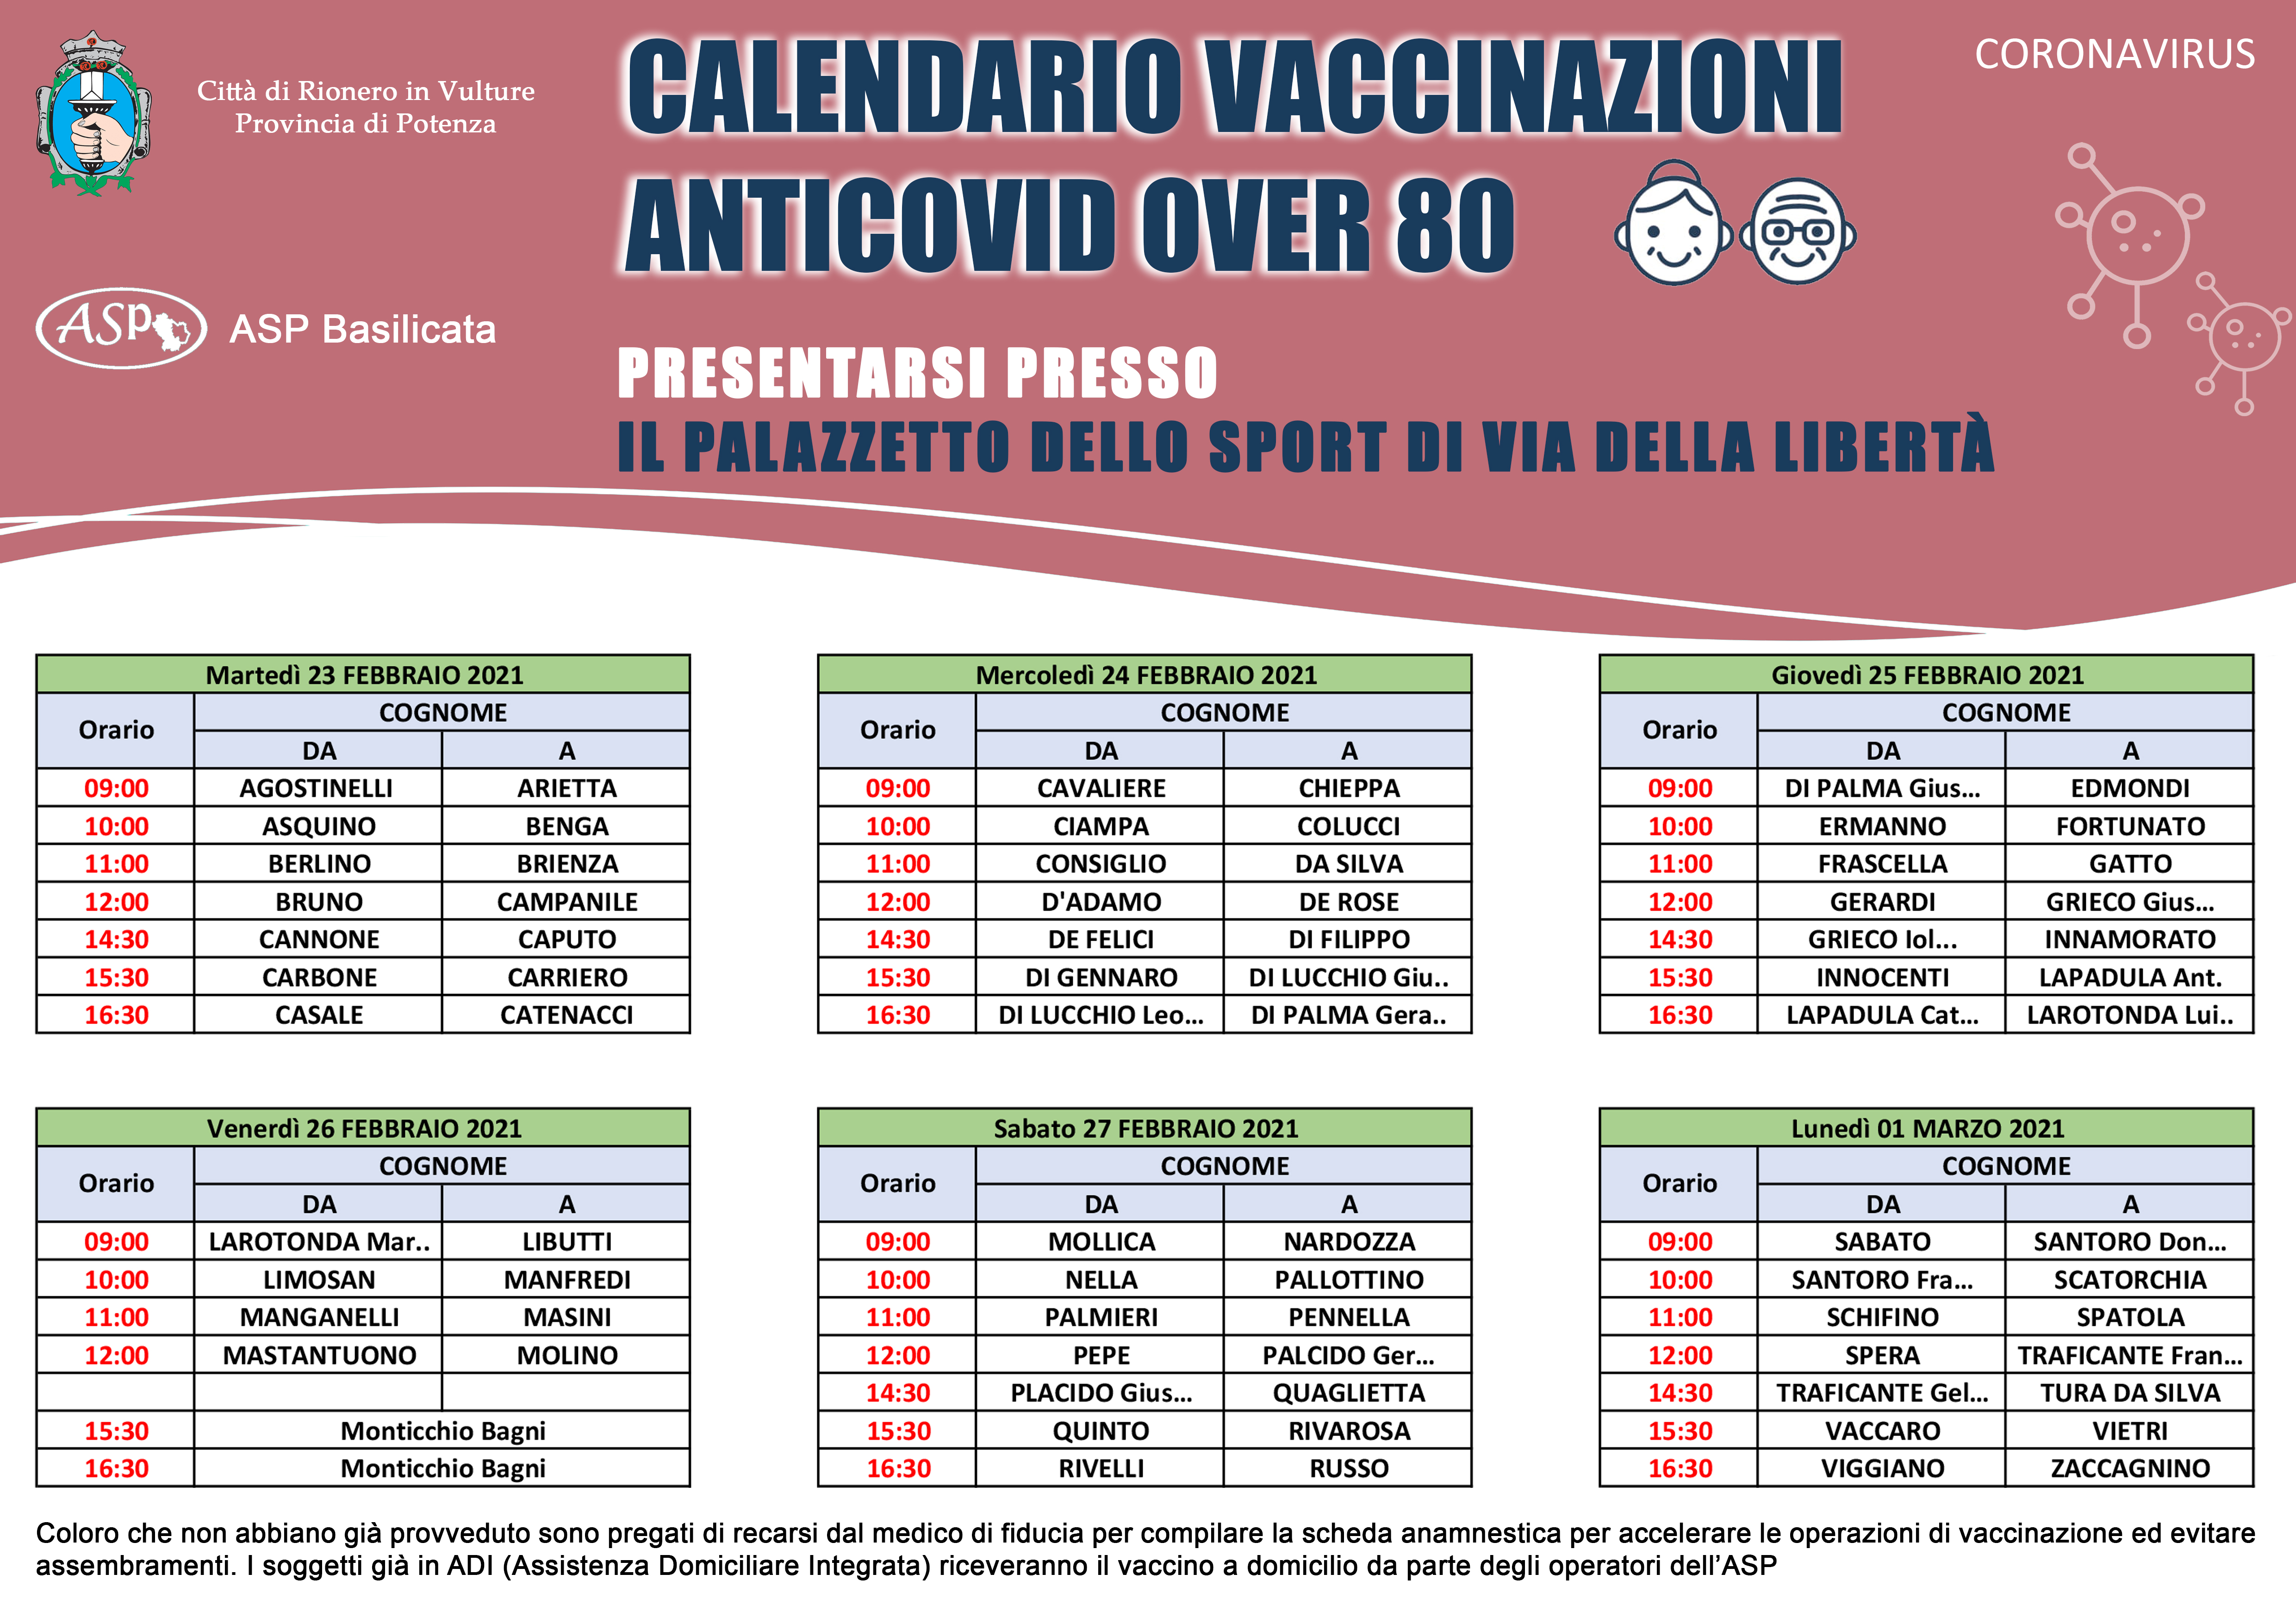 Il calendario delle vaccinazioni anti-Covid per gli anziani over 80